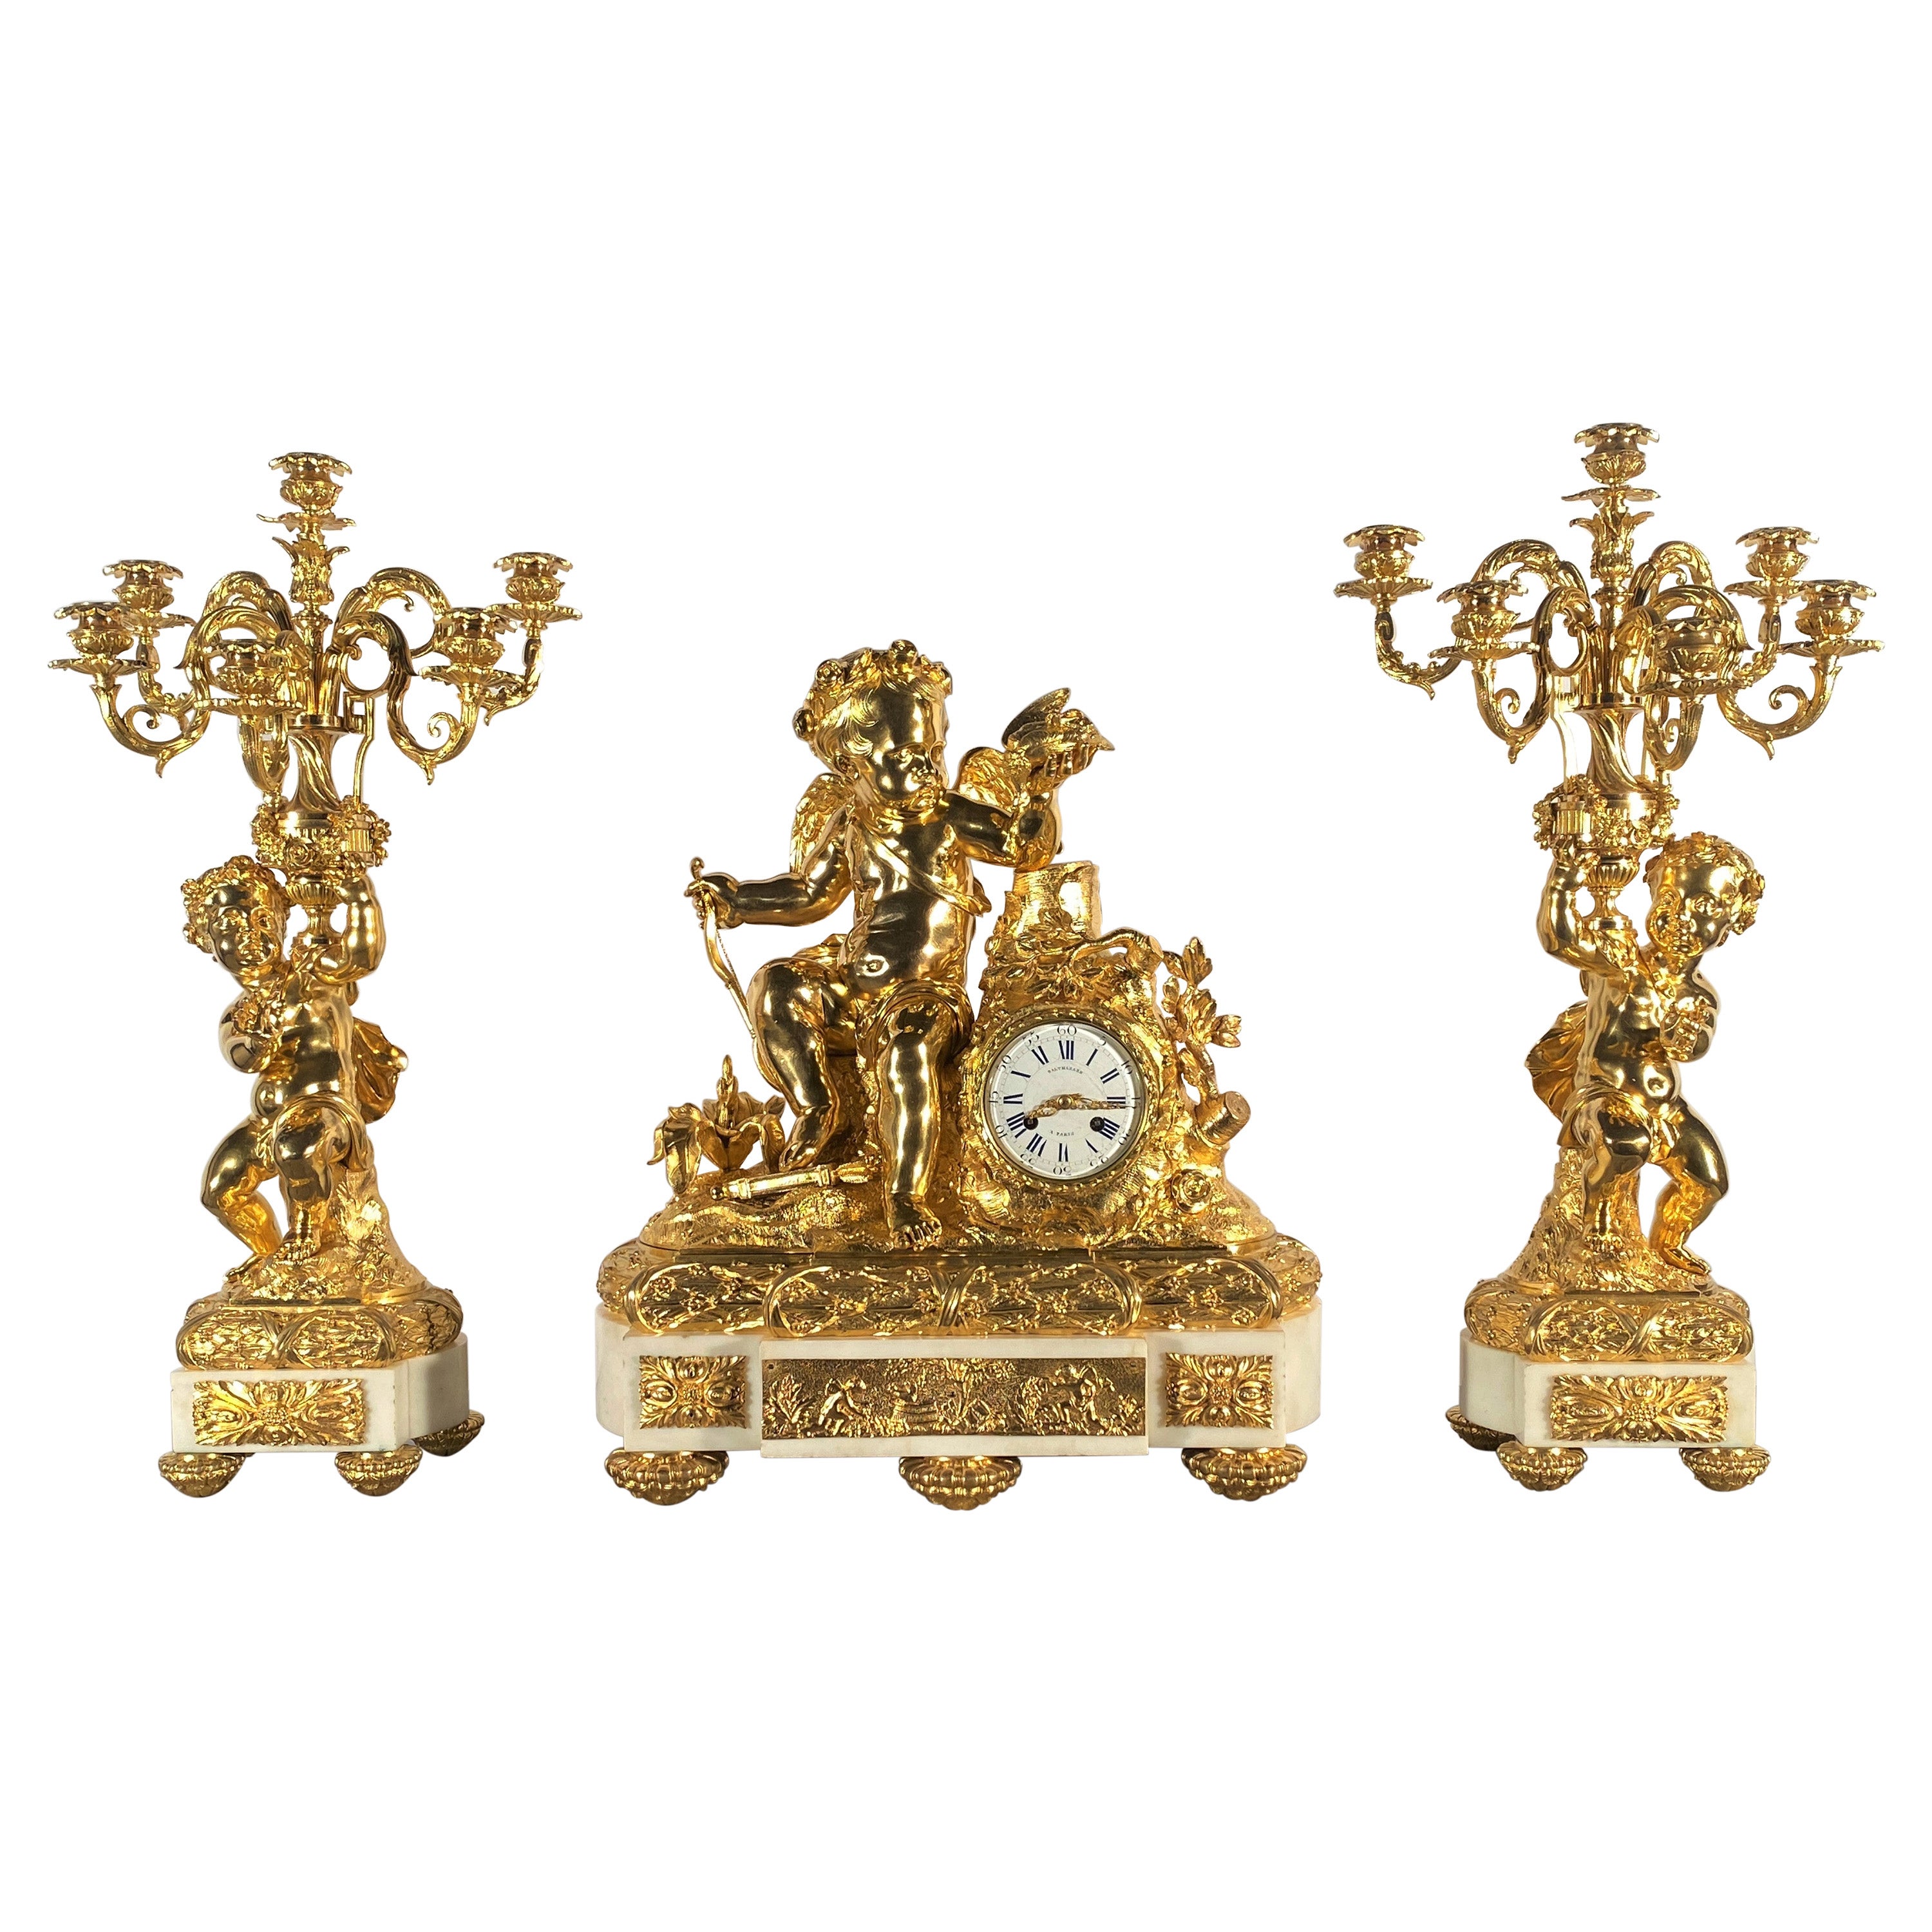 Garniture importante en marbre blanc et bronze doré, 19ème siècle